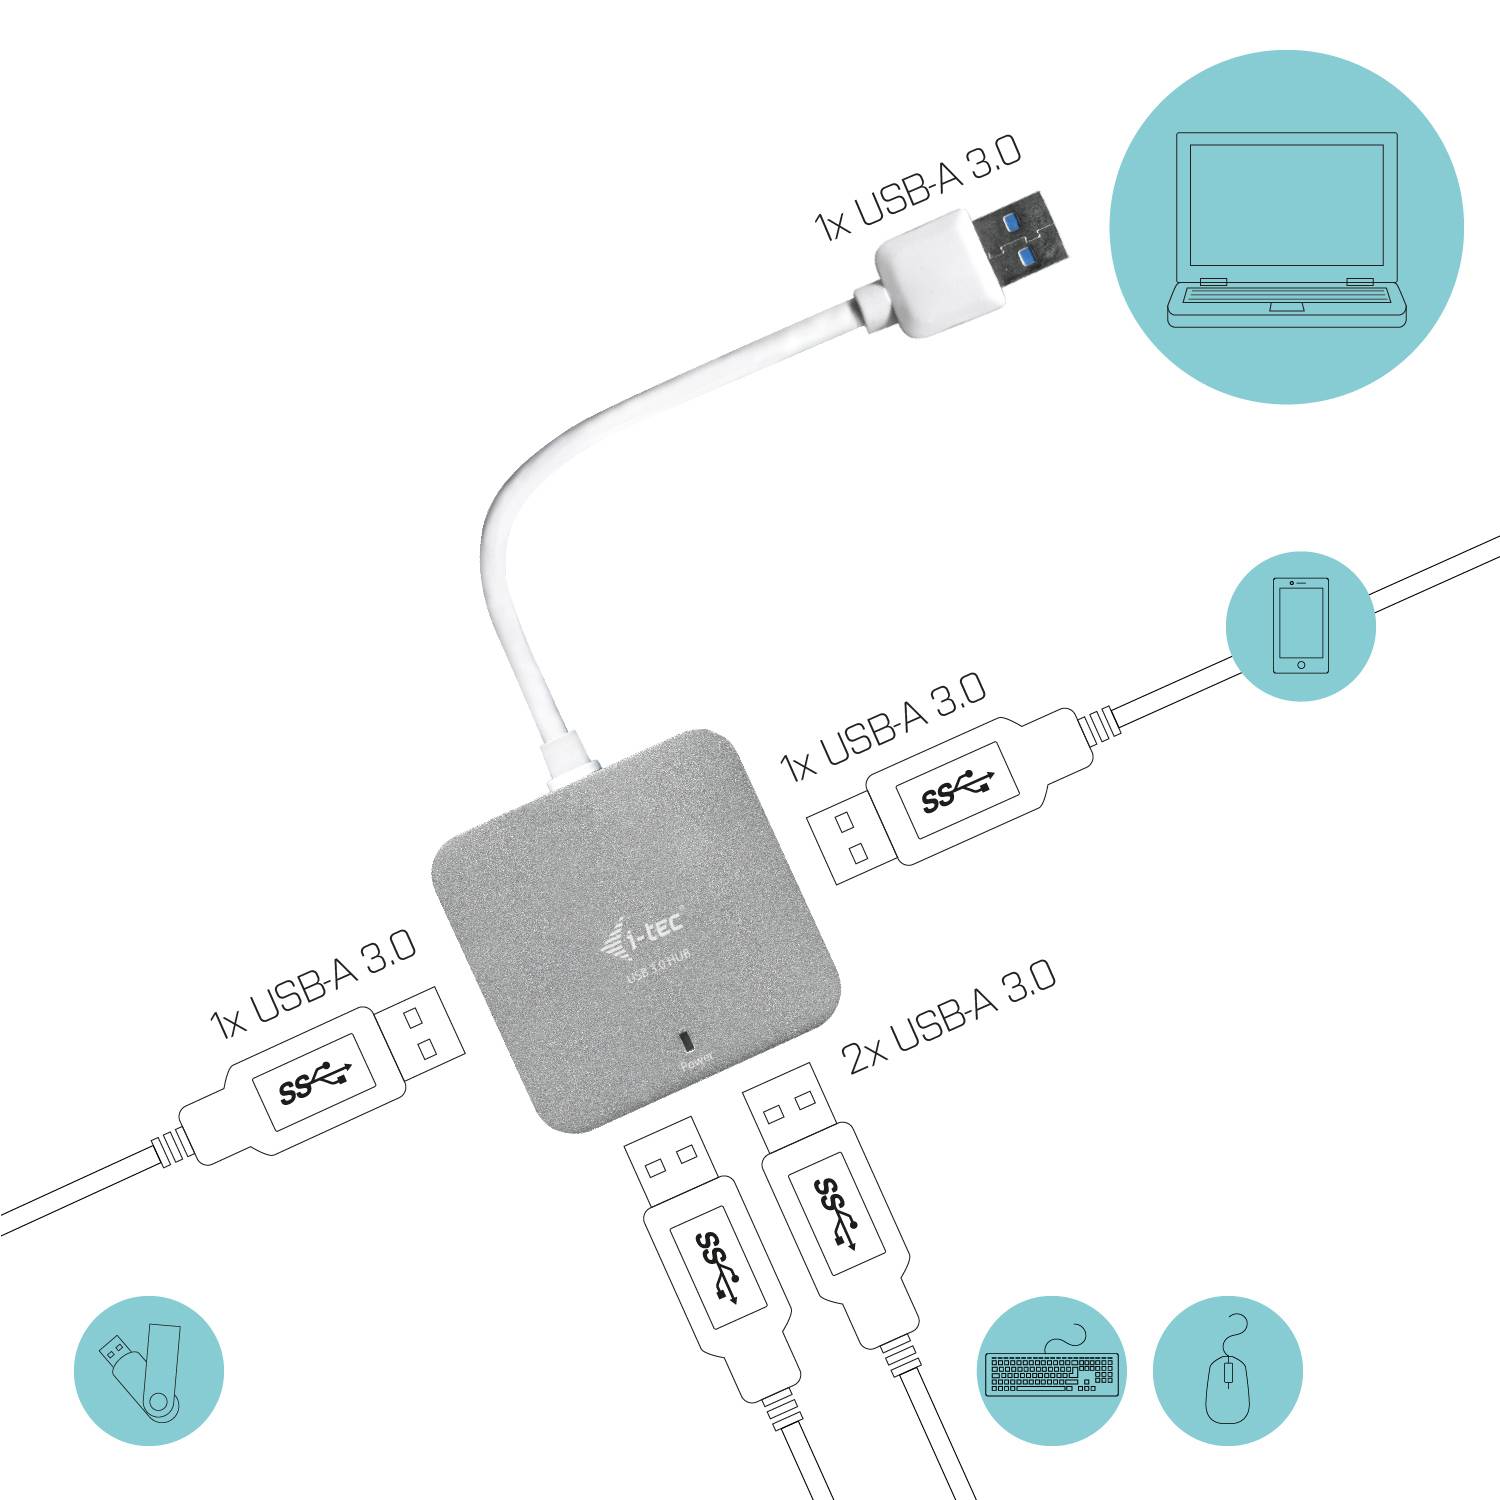 Rca Informatique - image du produit : I-TEC METAL PASSIVE HUB 4 PORT USB 3.0 NO PS WIN AND MAC OS